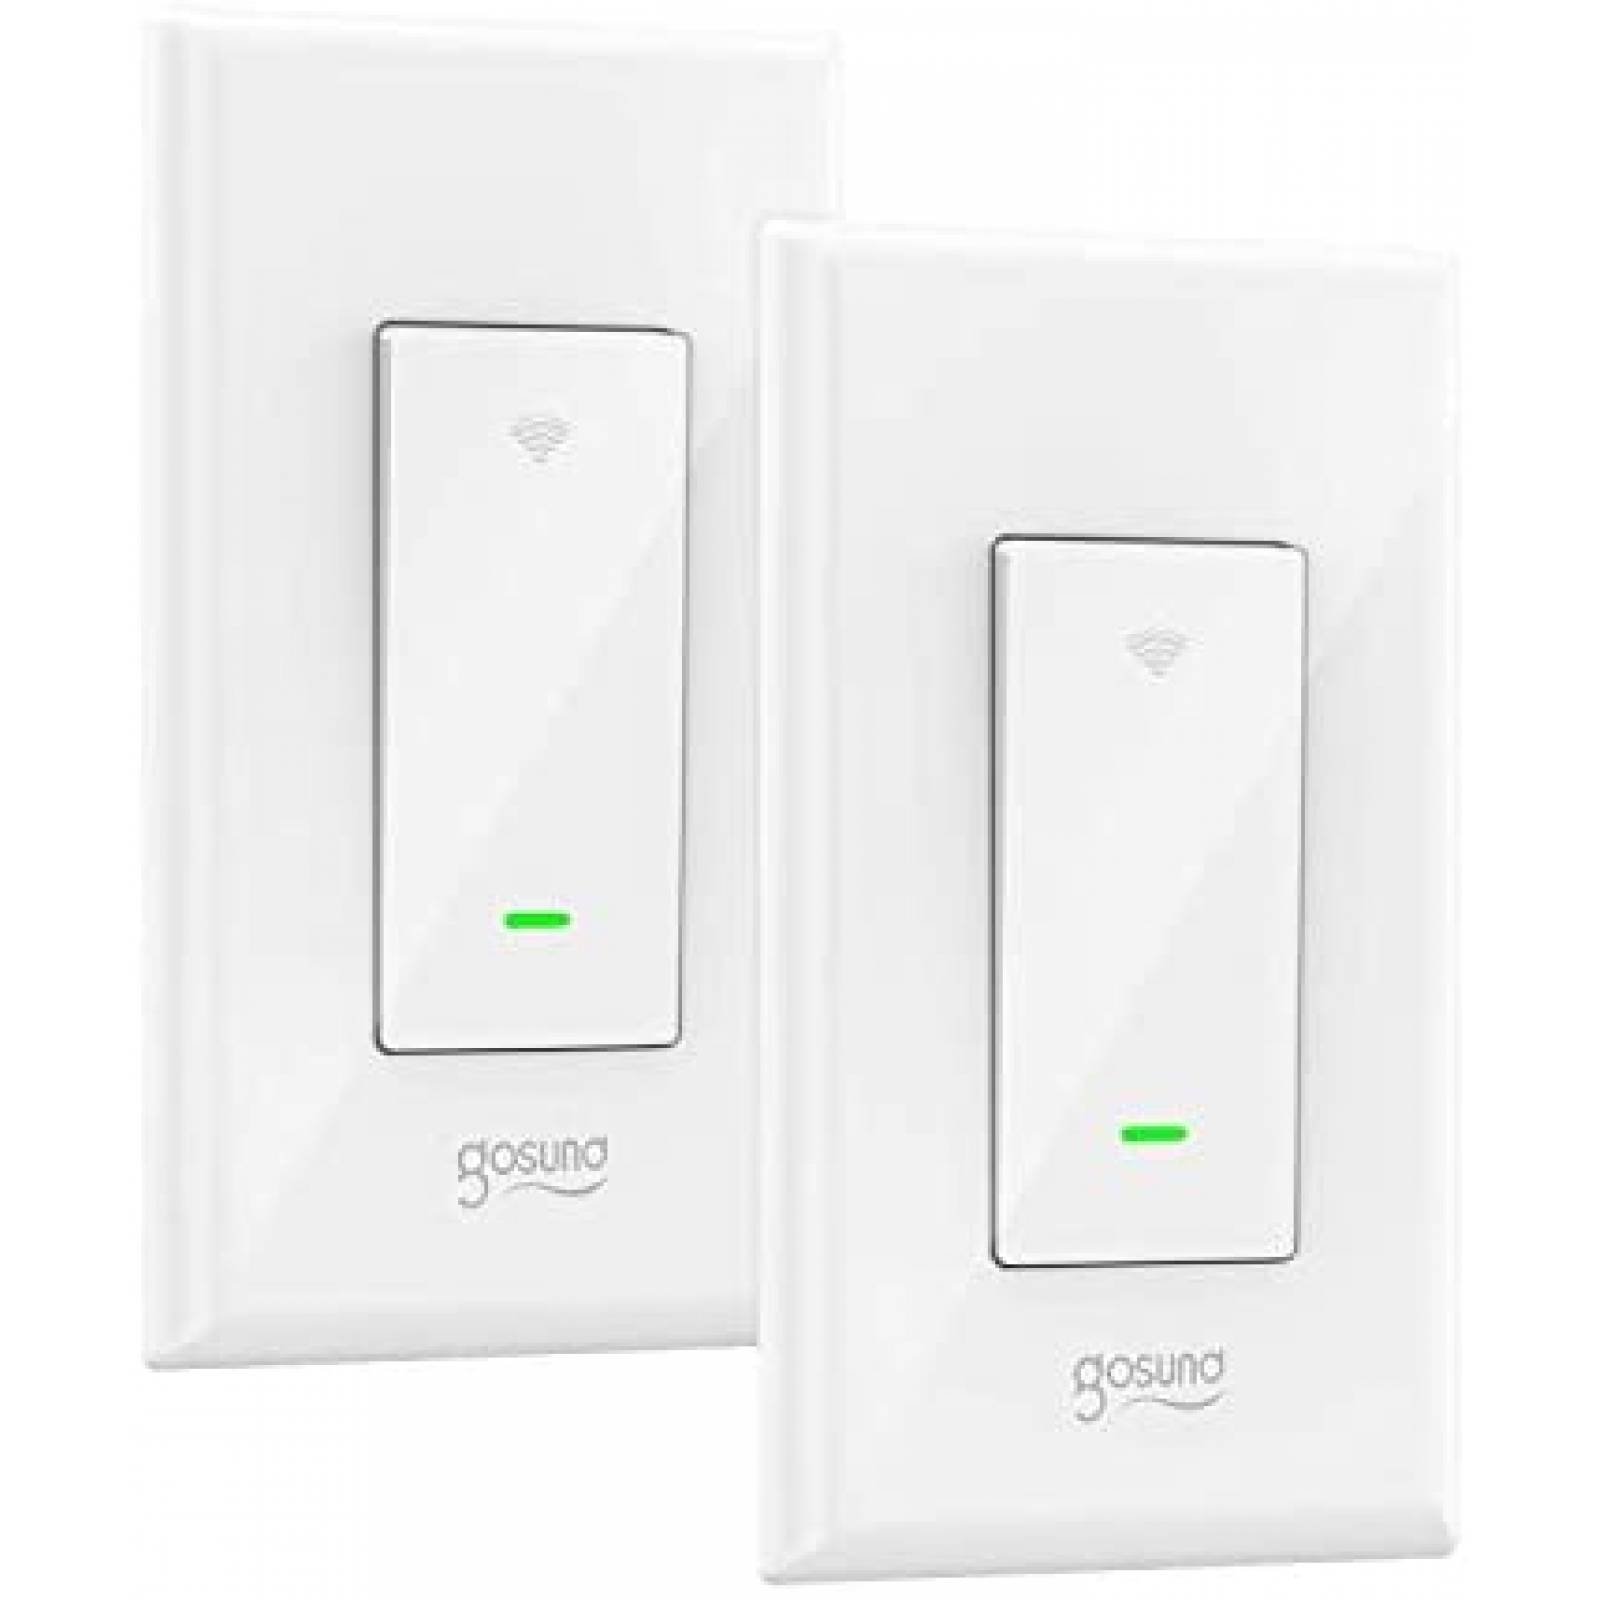 2 Interruptores de Luz Gosund Activación por WiFi -Blancos